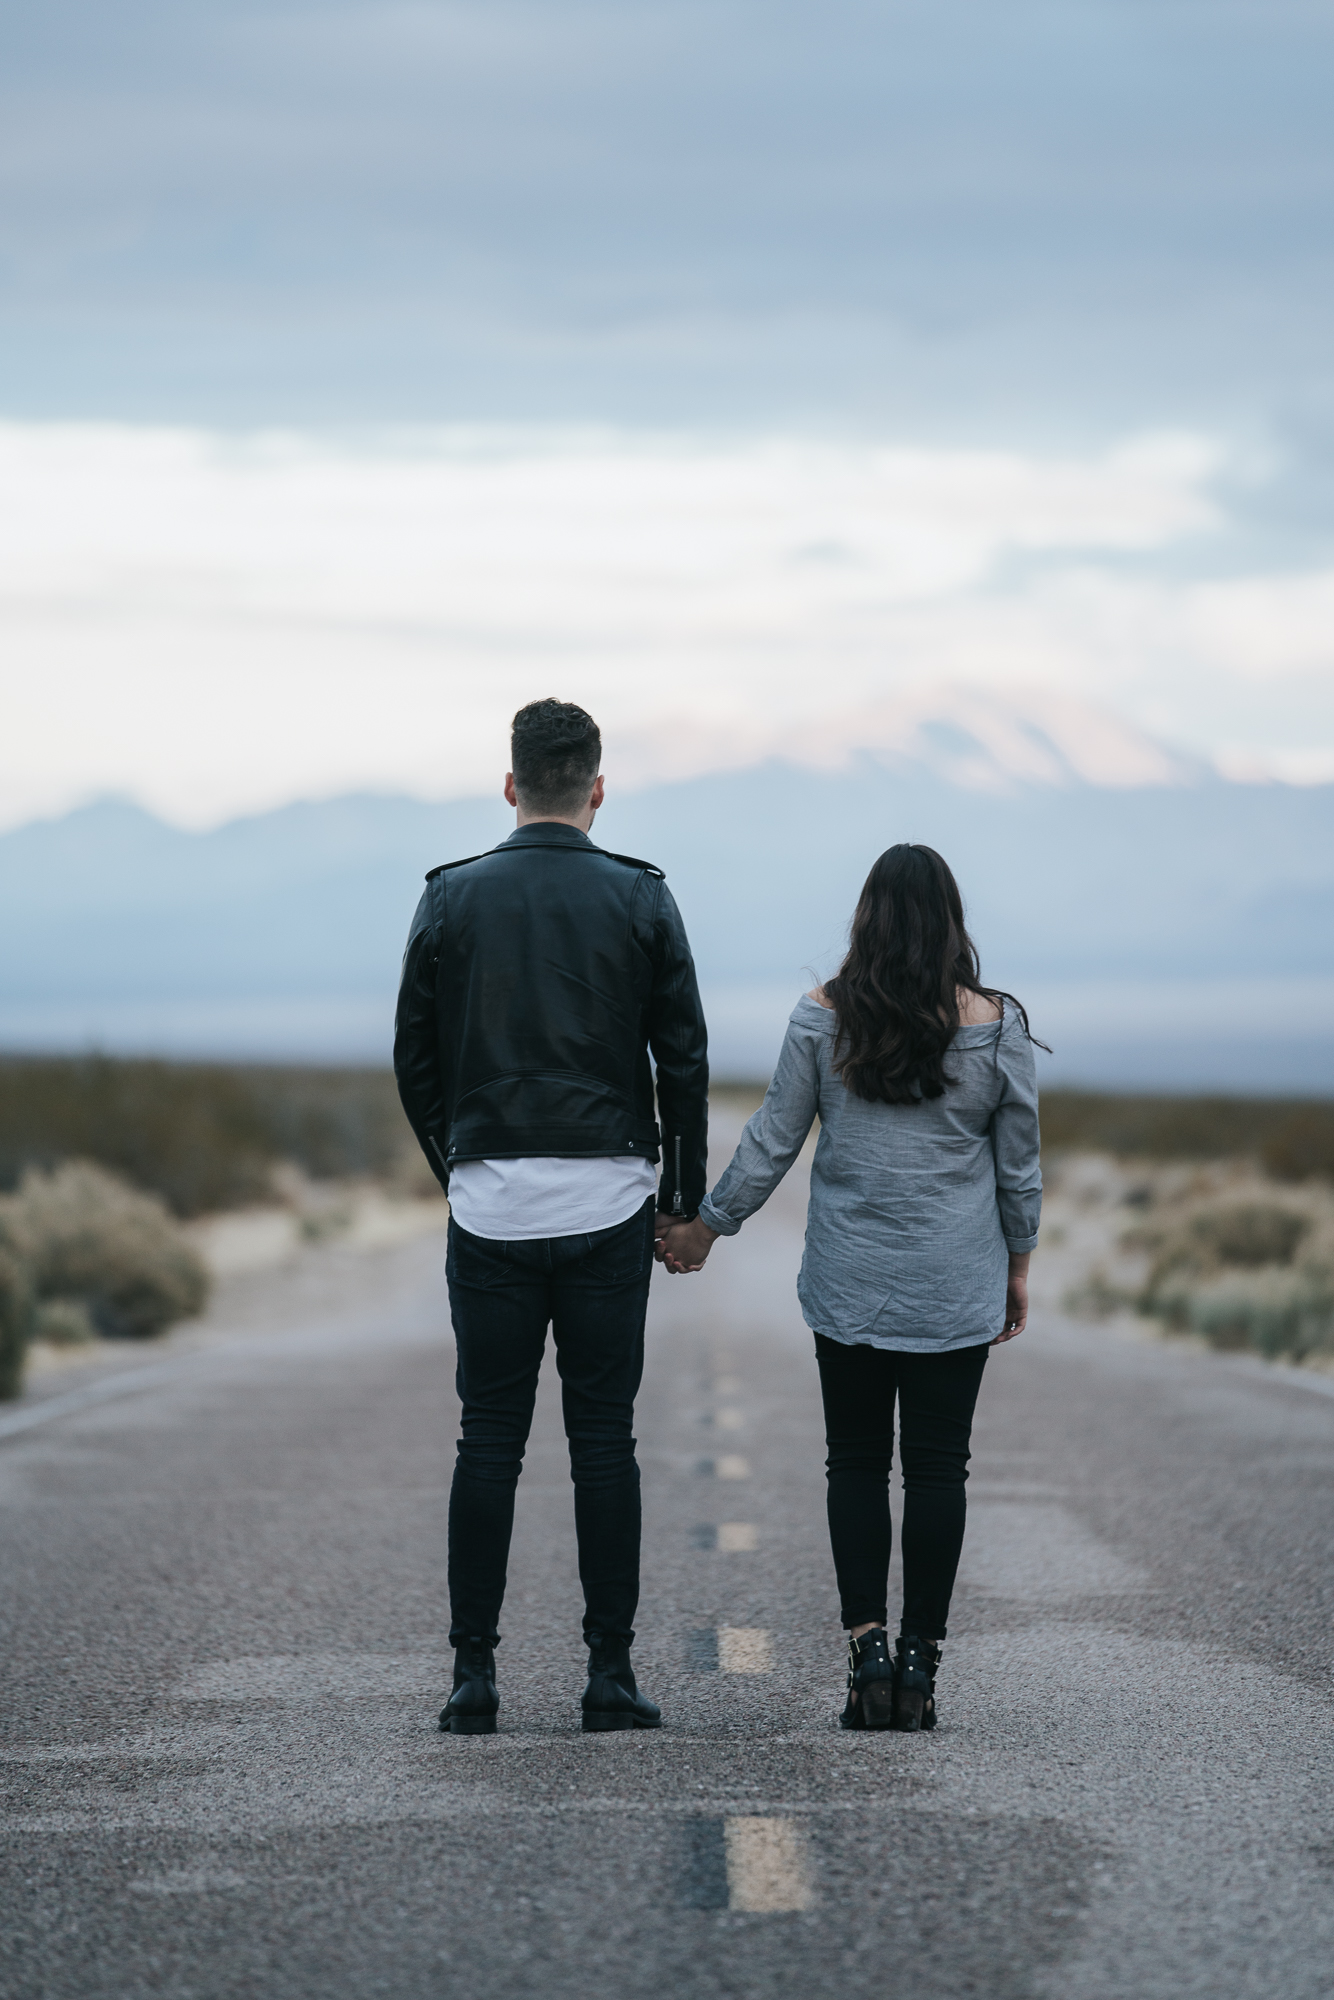 holding hands standing in street Mojave desert